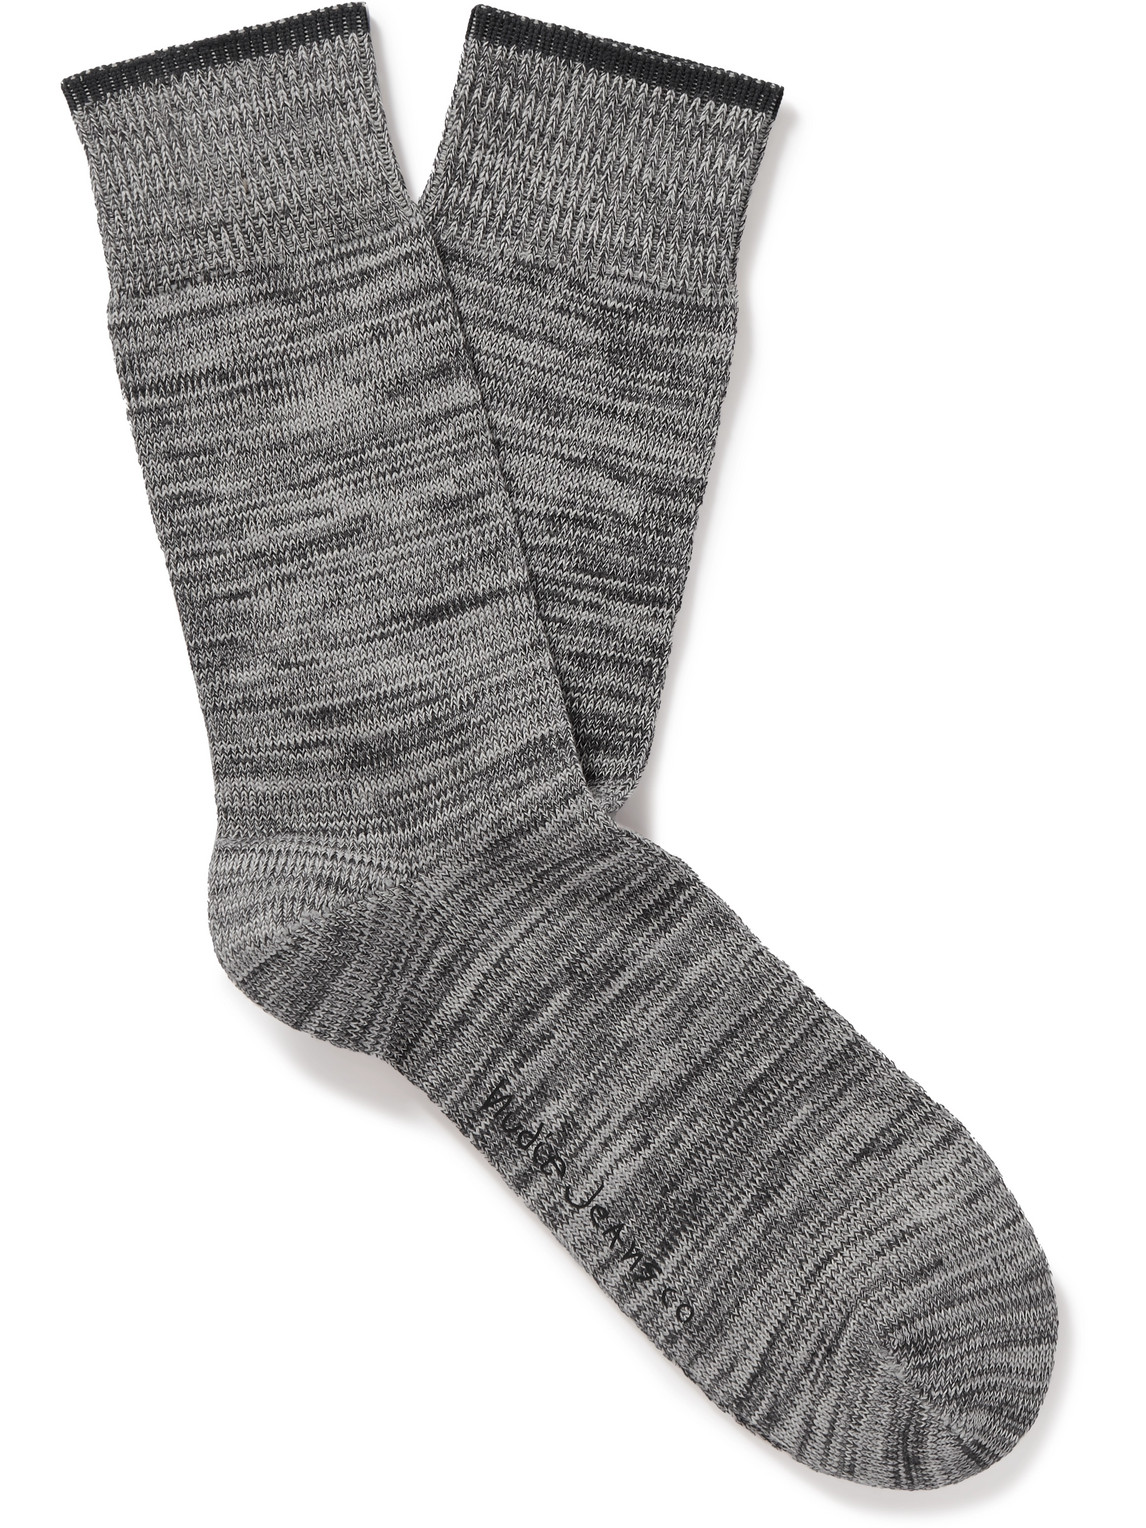 Nudie Jeans - Rasmusson Organic Cotton-Blend Socks - Men - Gray von Nudie Jeans